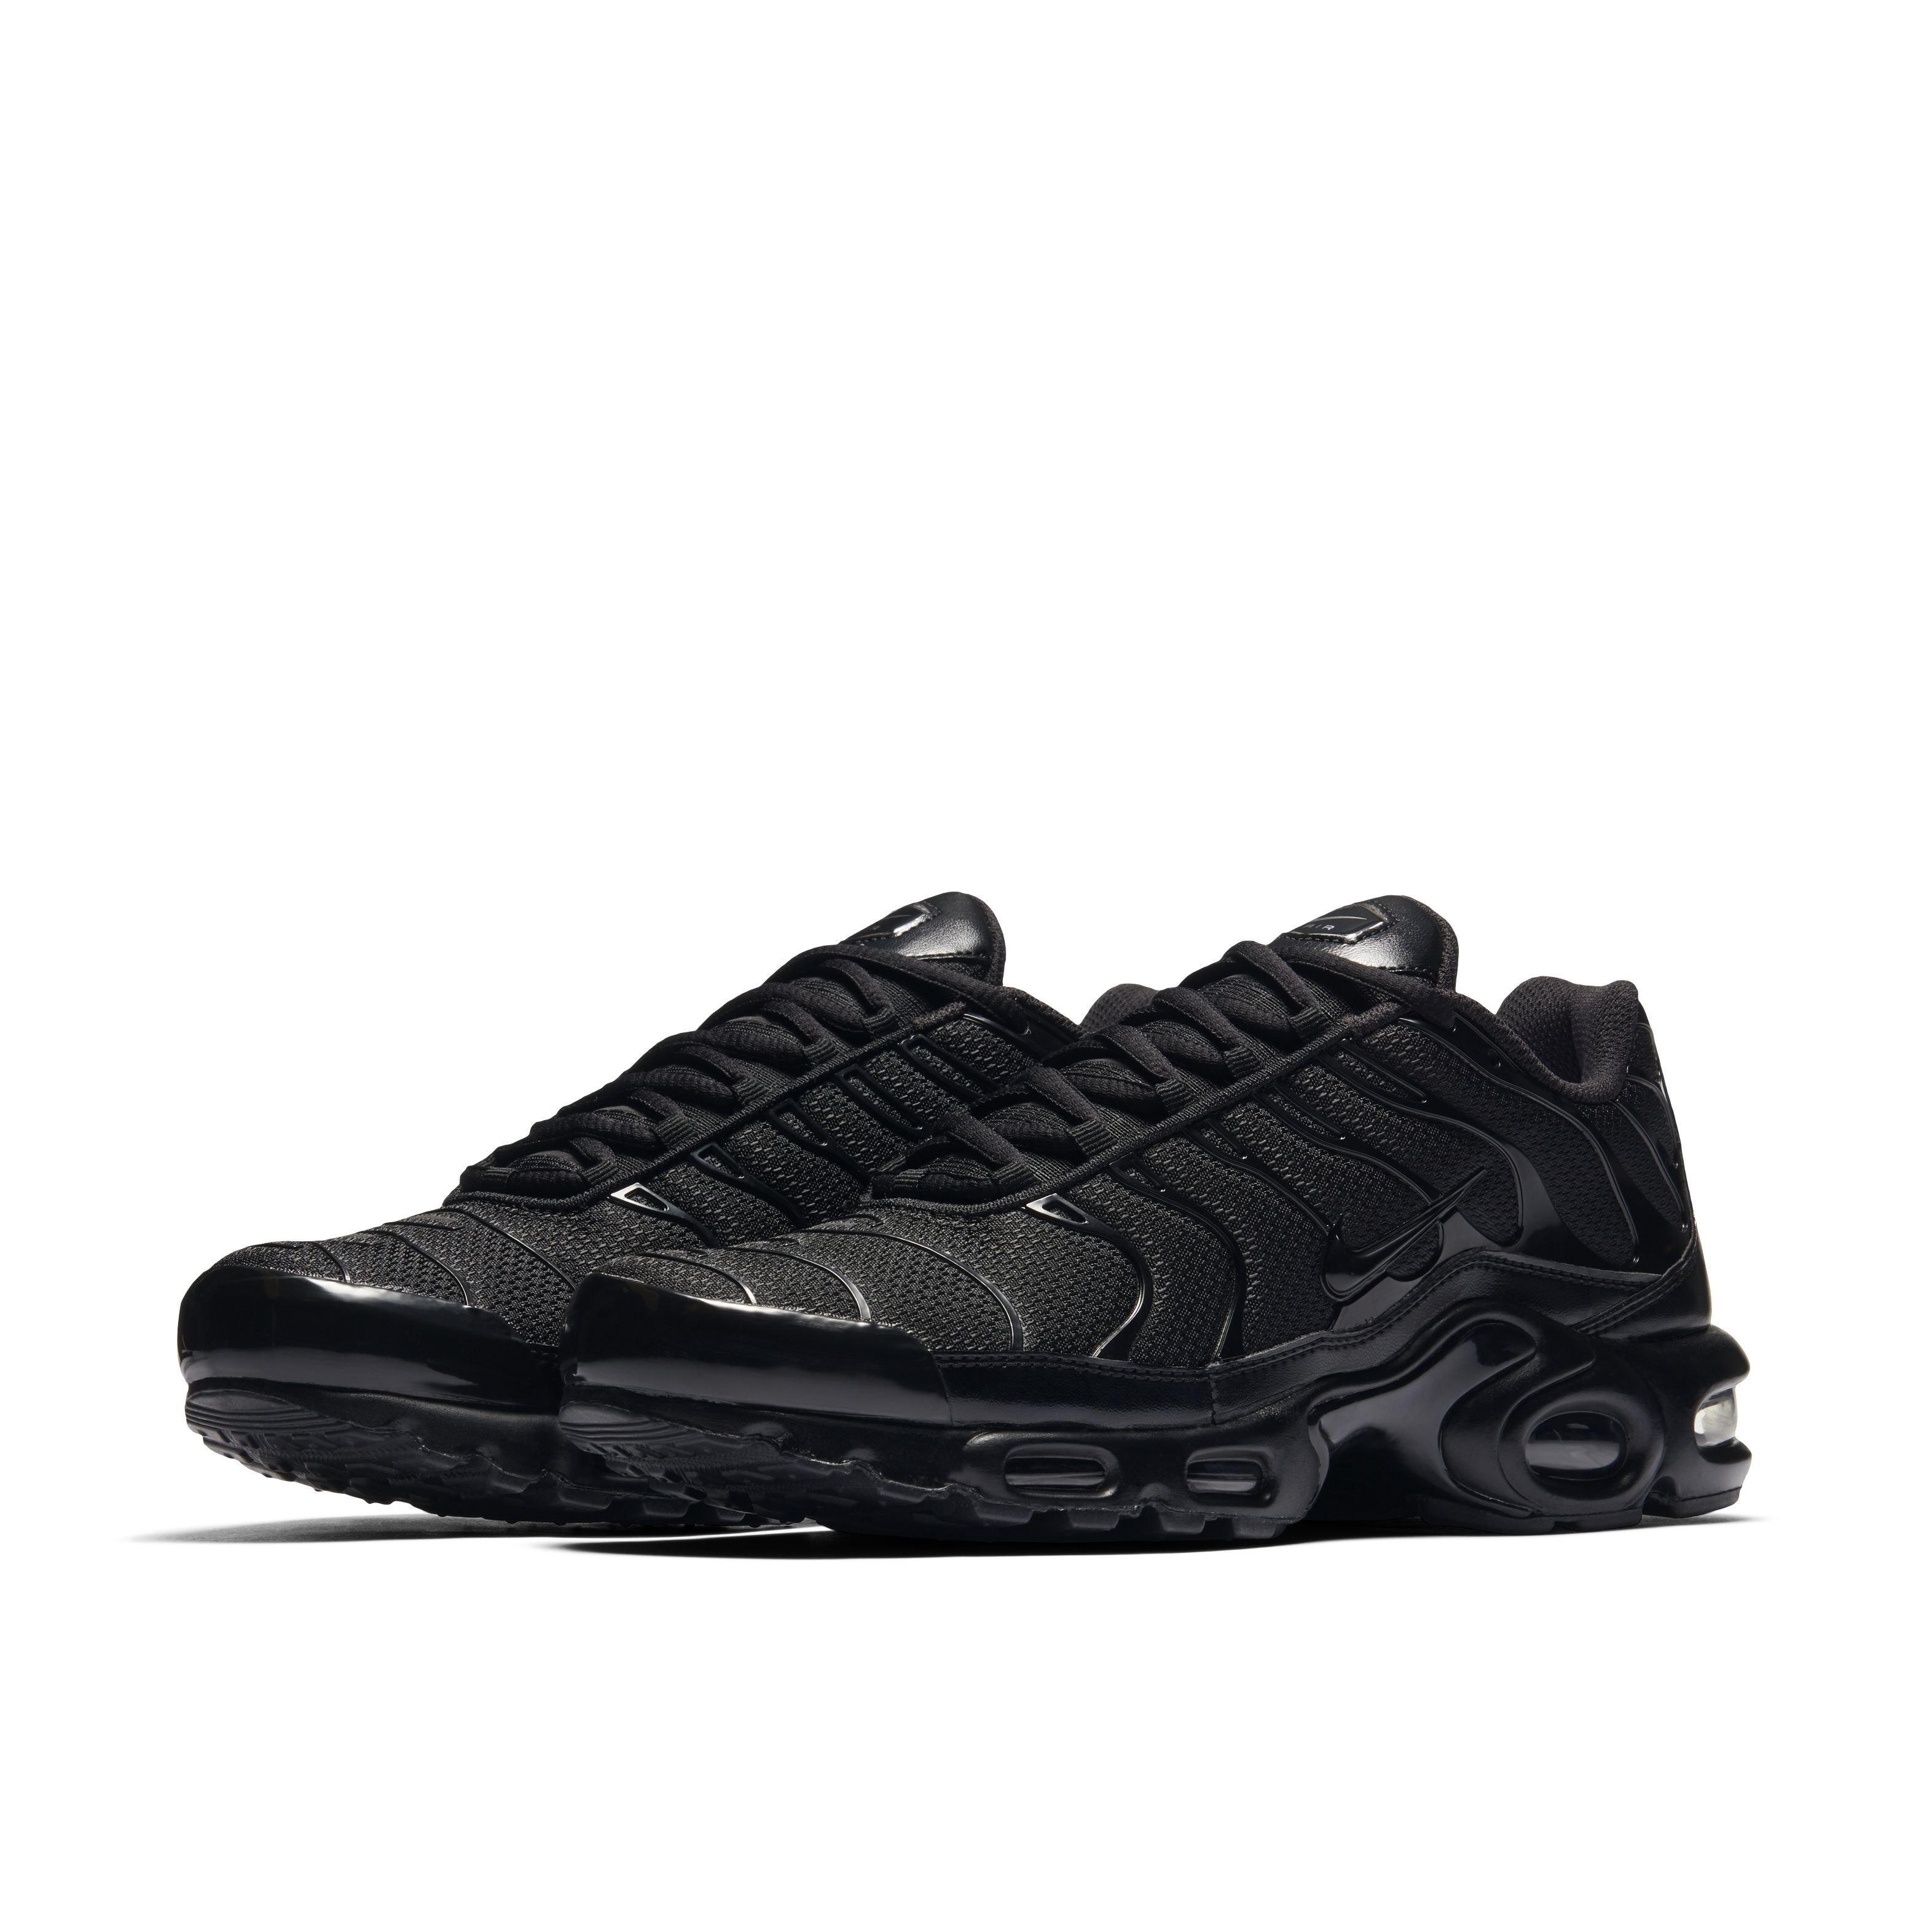 Nike Air Max Plus Black/Black/Black Men's Shoe - Hibbett